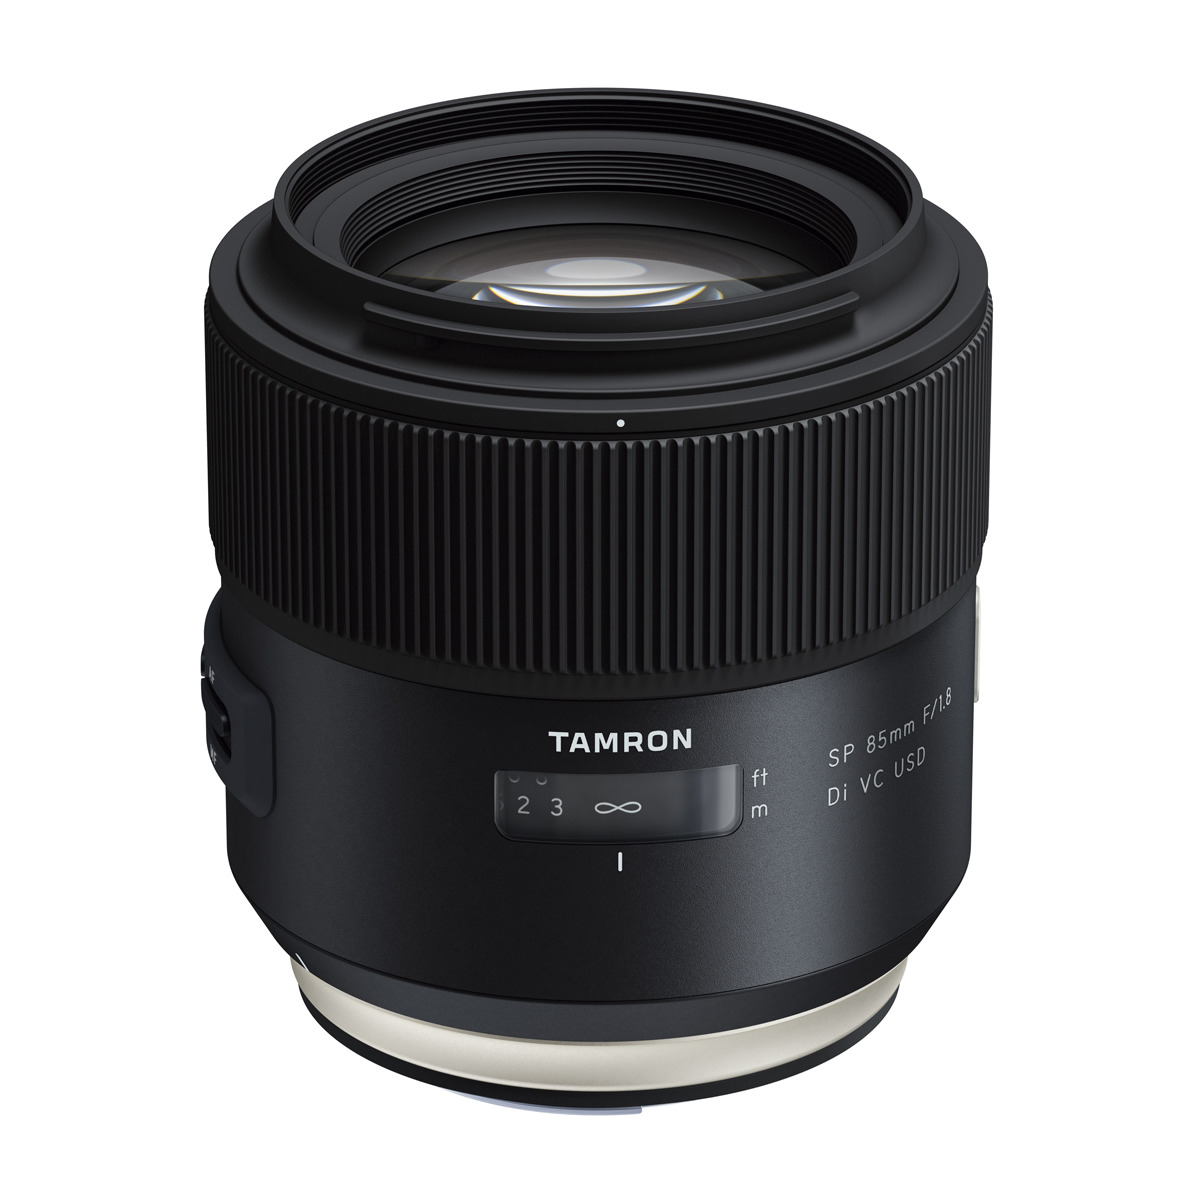 TAMRON SP DI Canon (Objektiv VC USD 85 EF-S-Mount, SP f/1.8 VC, für USD, mm F/1.8 85 - Schwarz) 85MM mm Di, CANON F016E